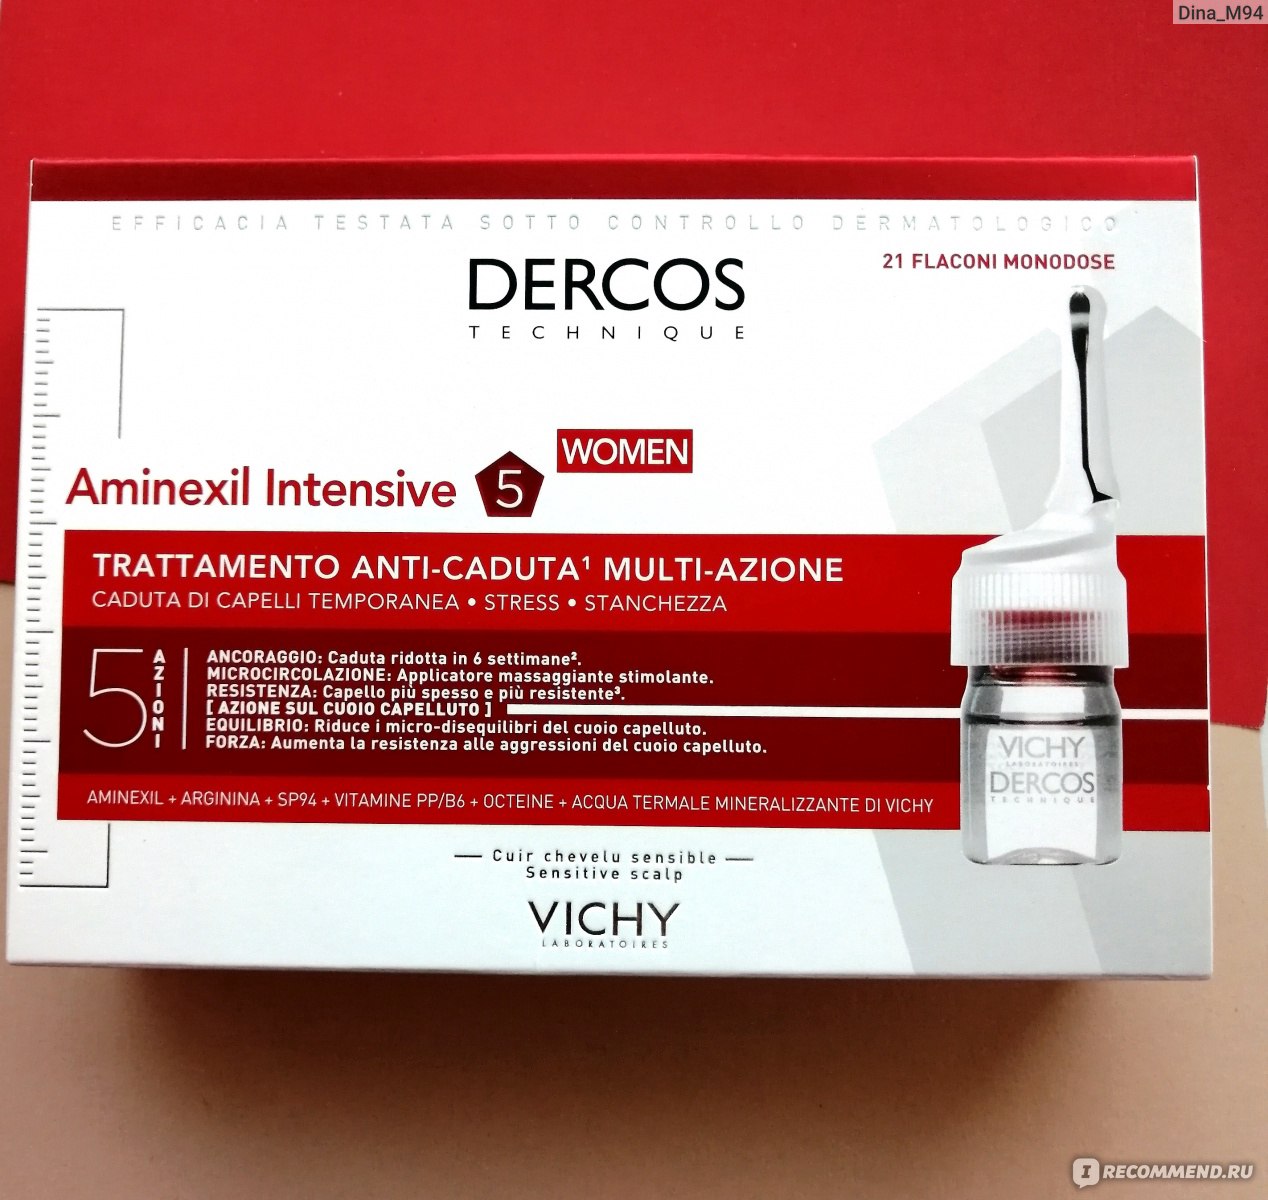 Средство от выпадения волос Vichy Dercos aminexil intensive 5 для женщин -  «Средство от выпадения волос Vichy Dercos aminexil intensive 5 для женщин  которое действительно работает!» | отзывы